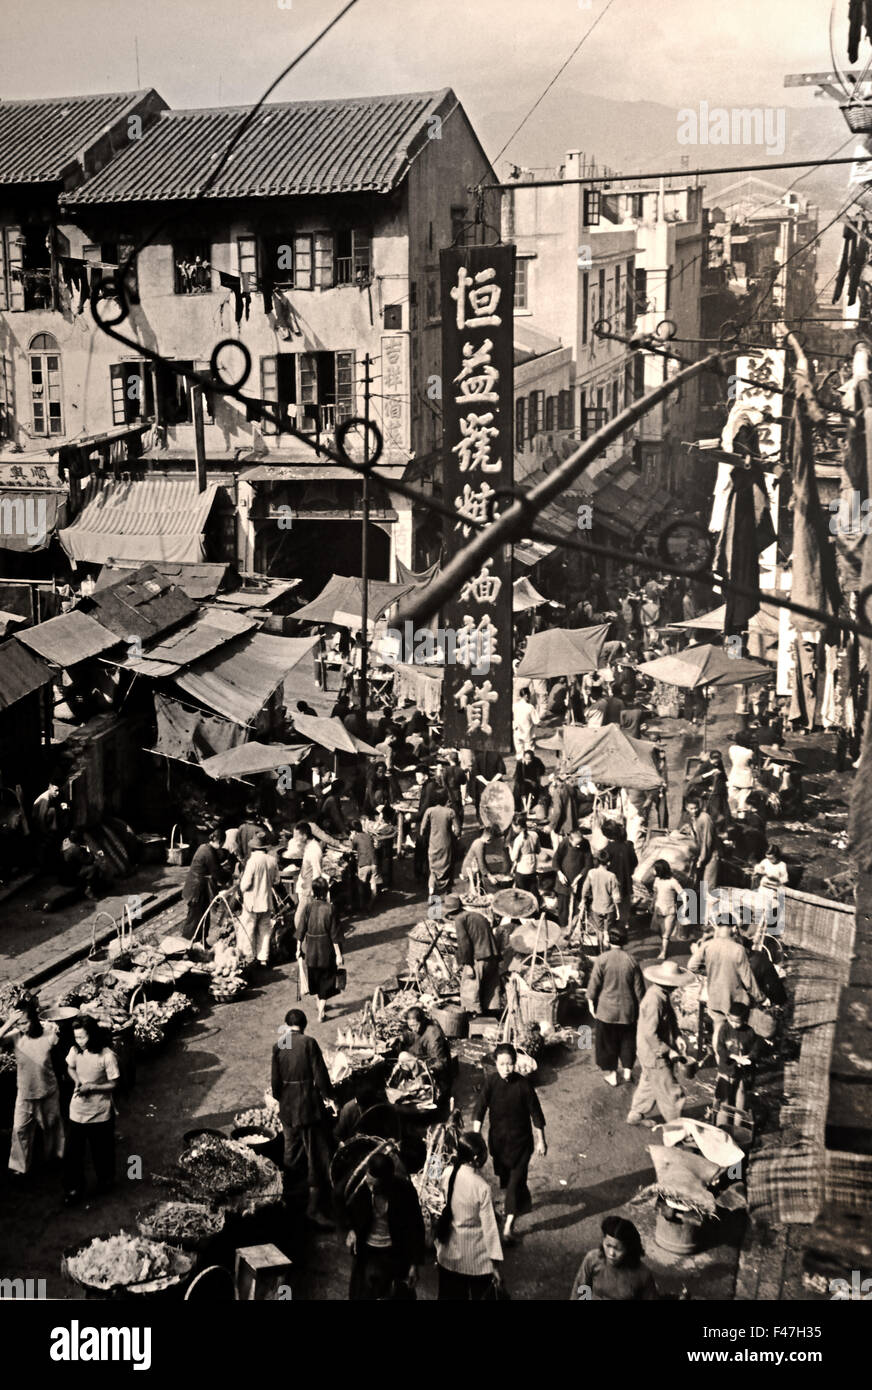 Dans la rue du centre Sai Ying Pun déborde d'activité 1947 de l'histoire Musée chinois de Hong Kong, Chine Banque D'Images